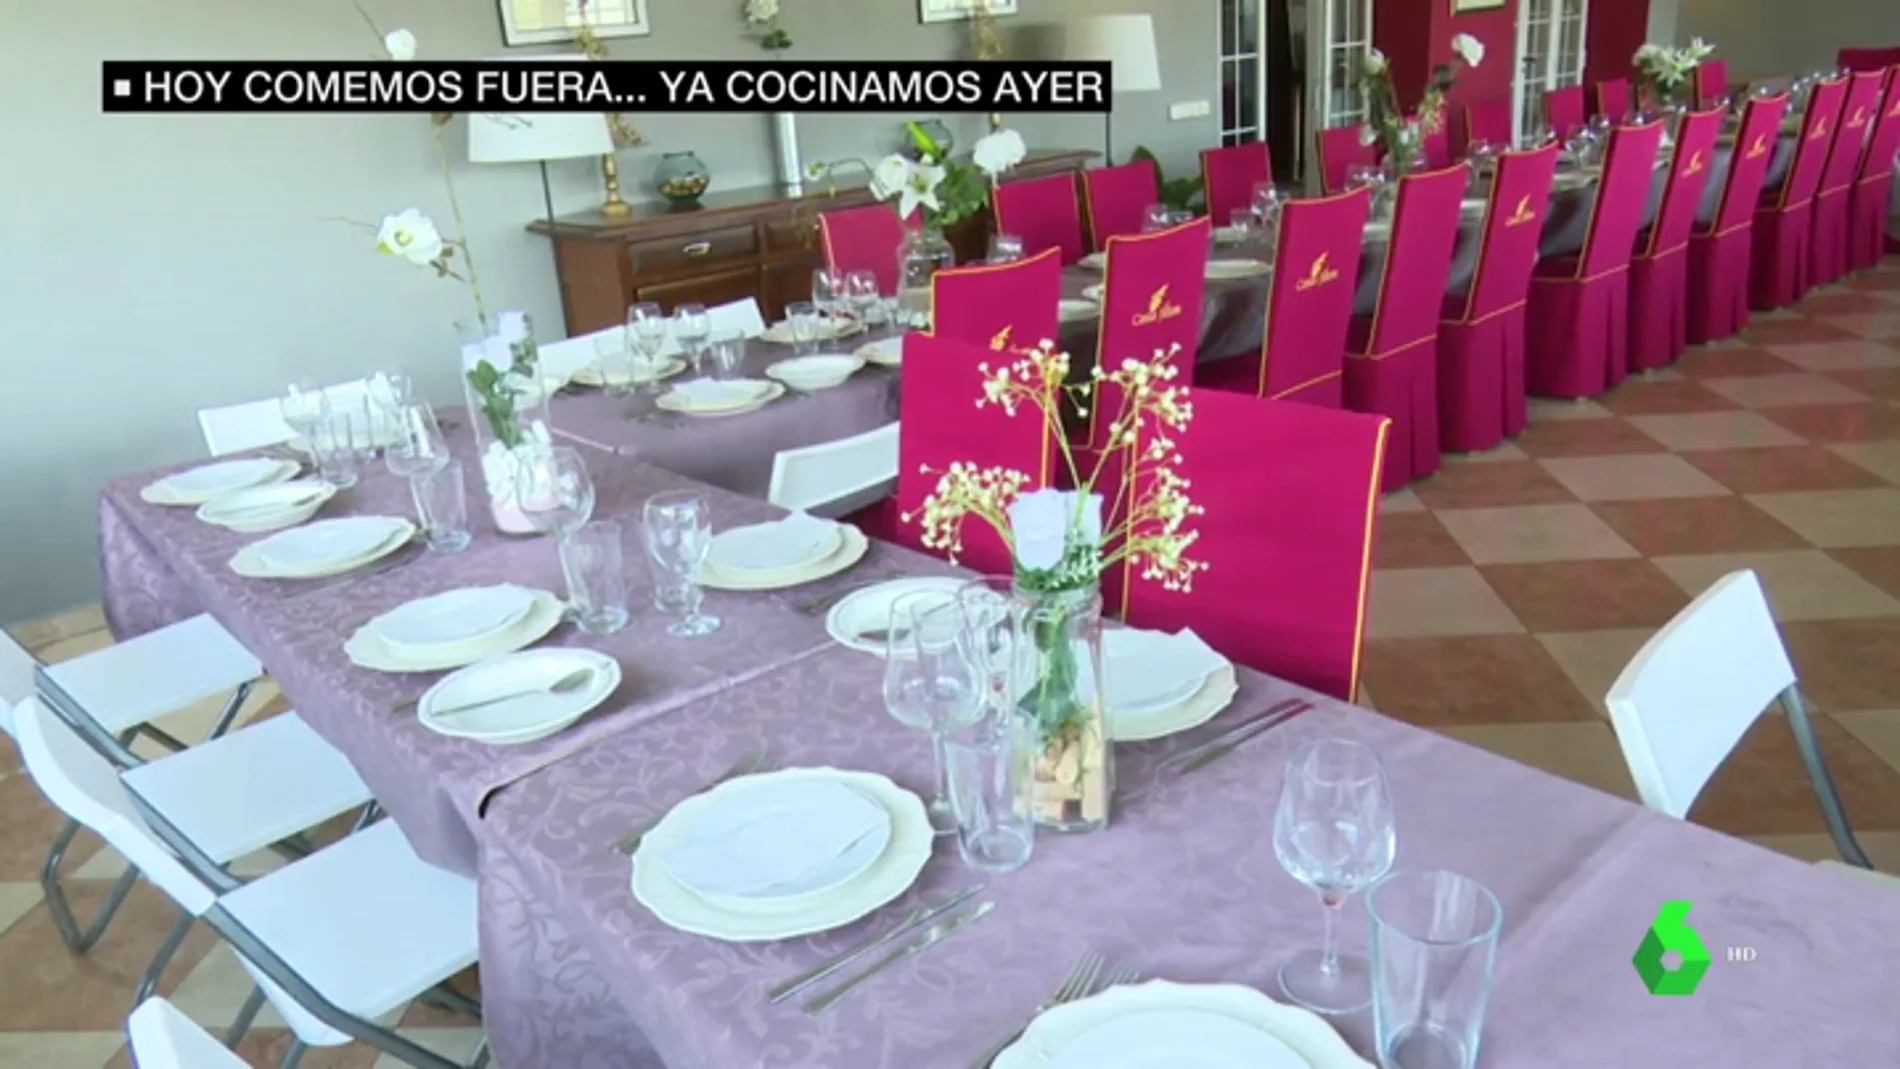 Comer fuera de casa el 25 de diciembre, una moda que se va convirtiendo en tradición en toda España